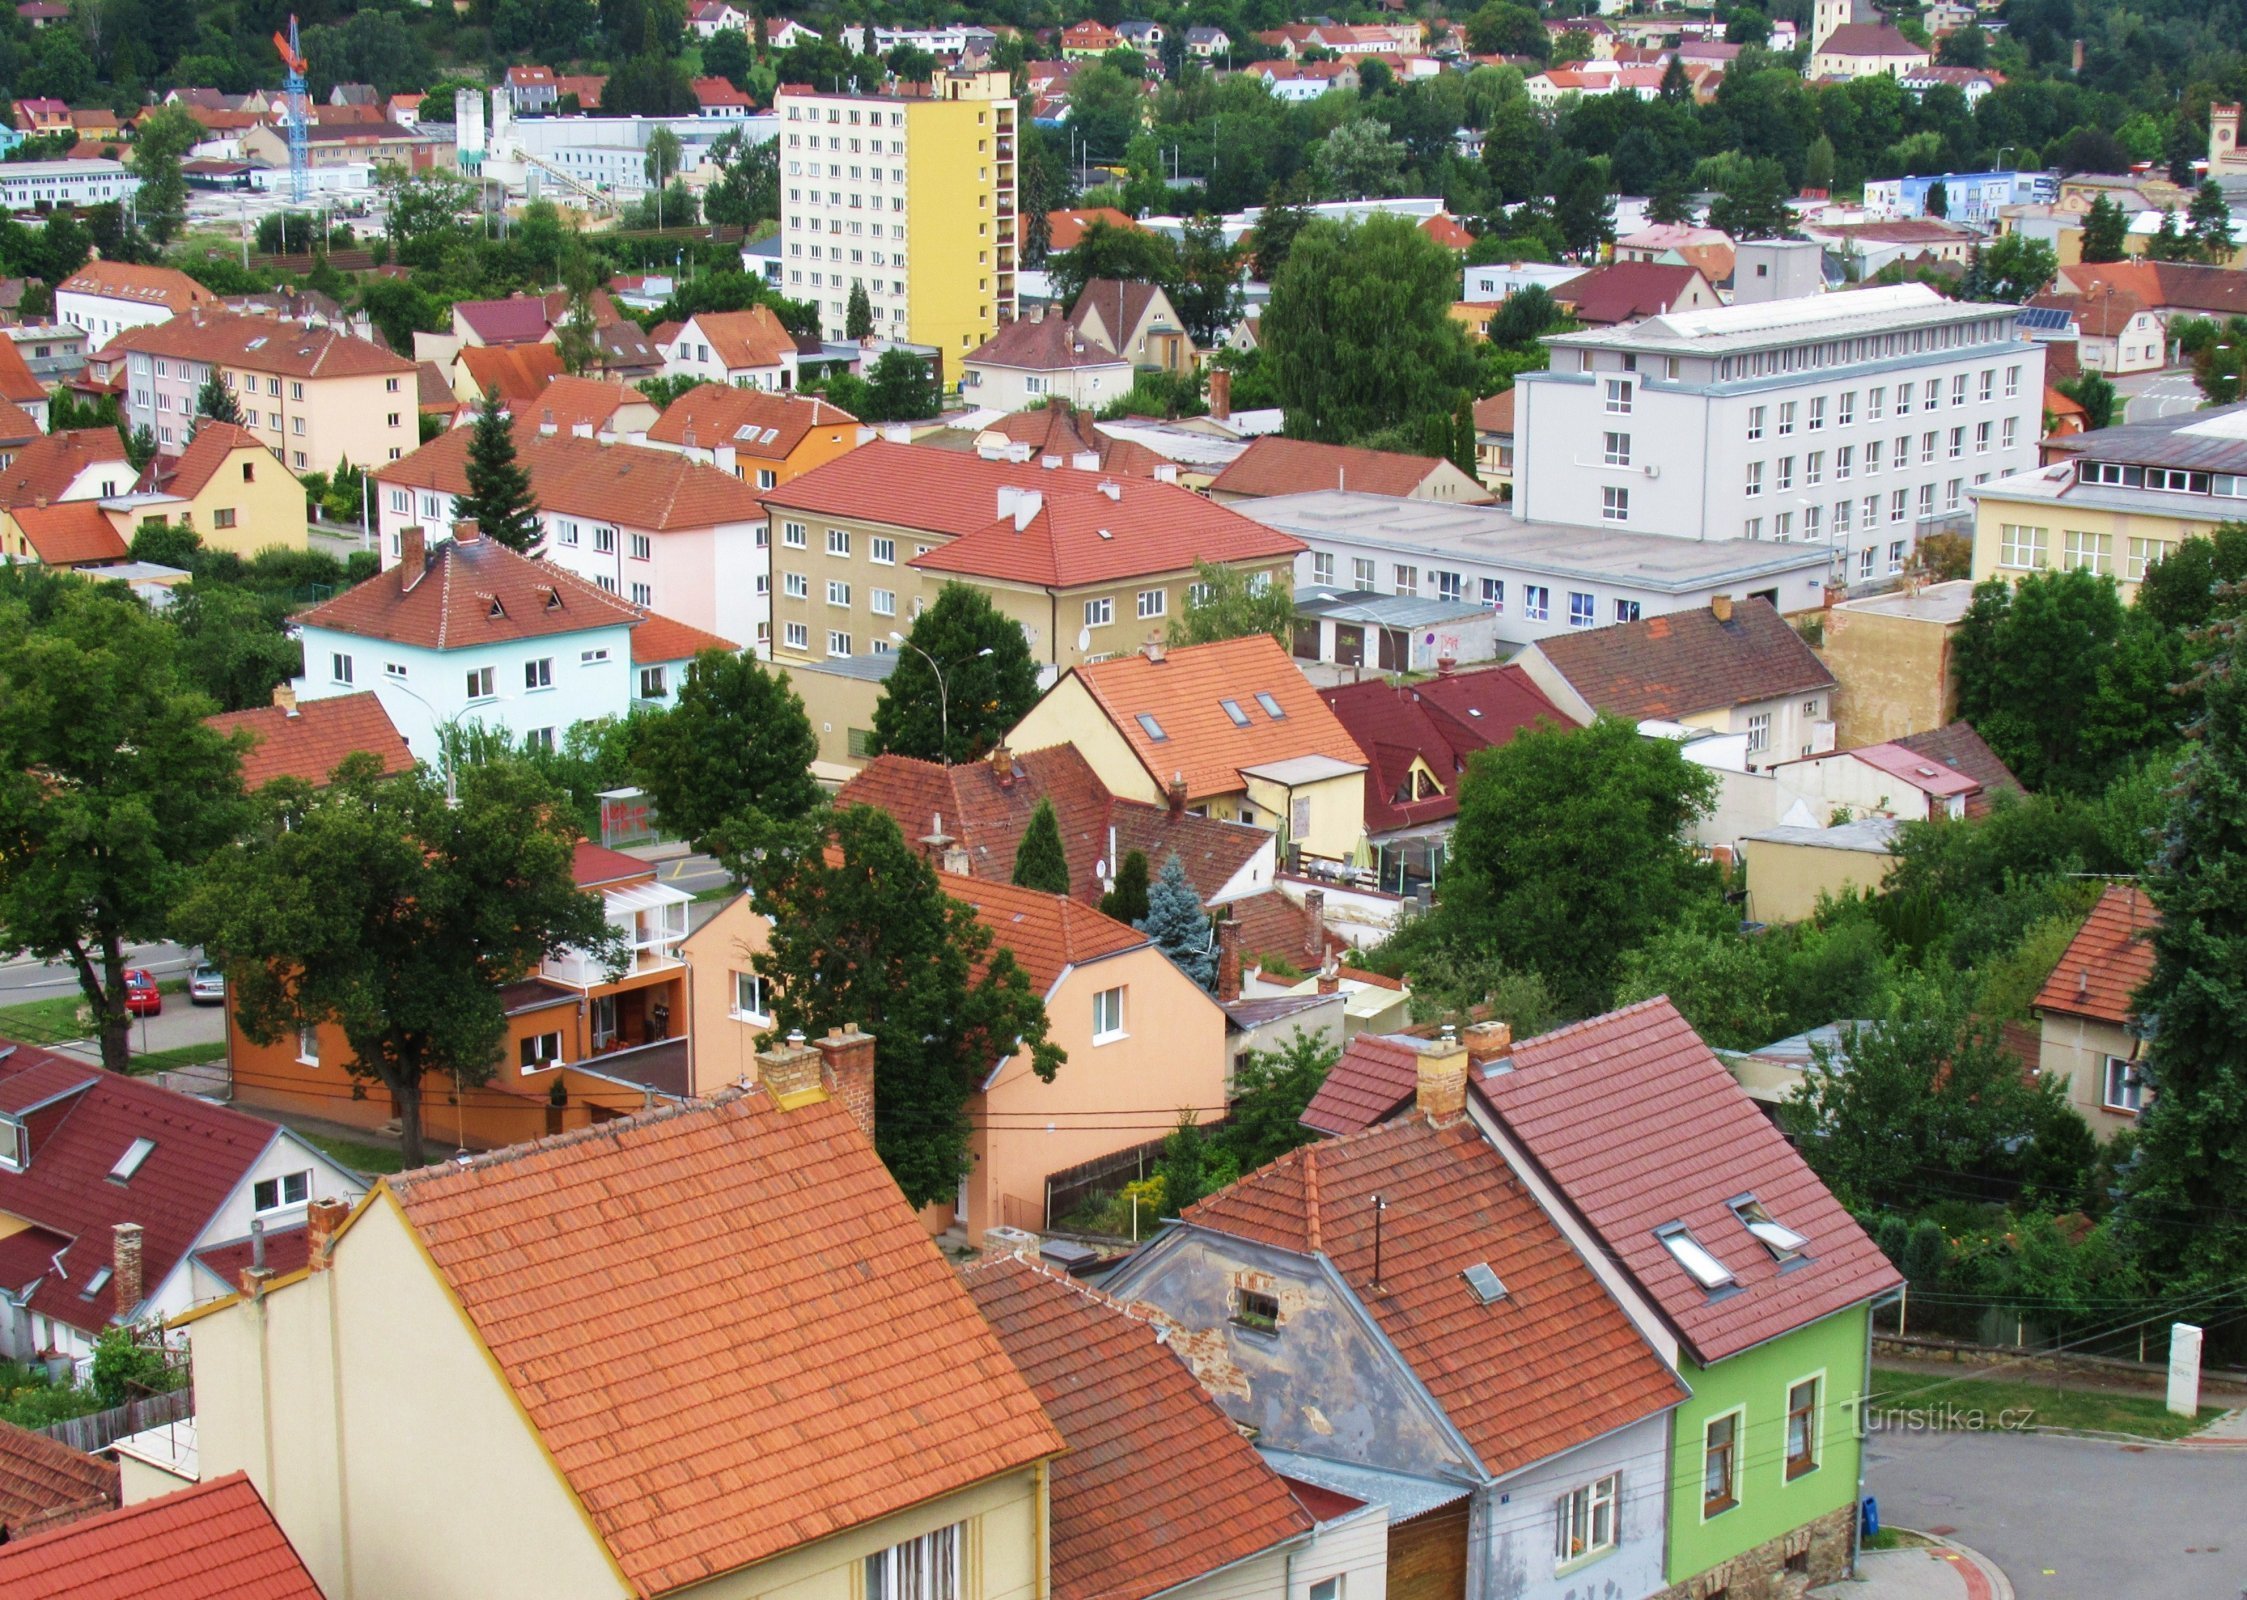 Thị trấn Blansko và các di tích của nó